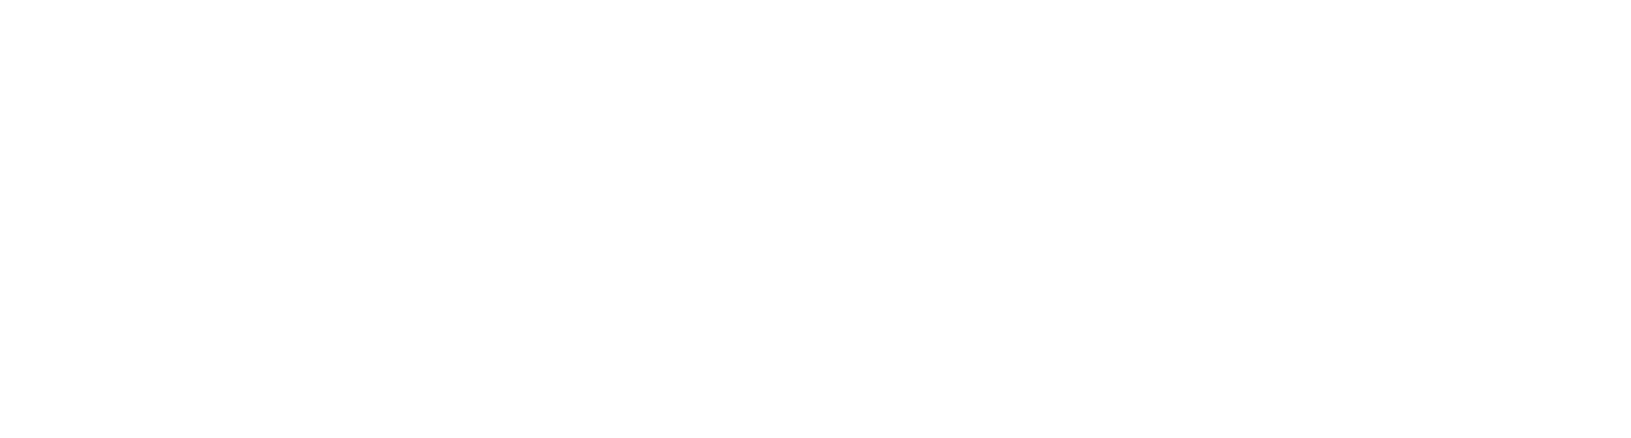 Kropsos_White_Logo